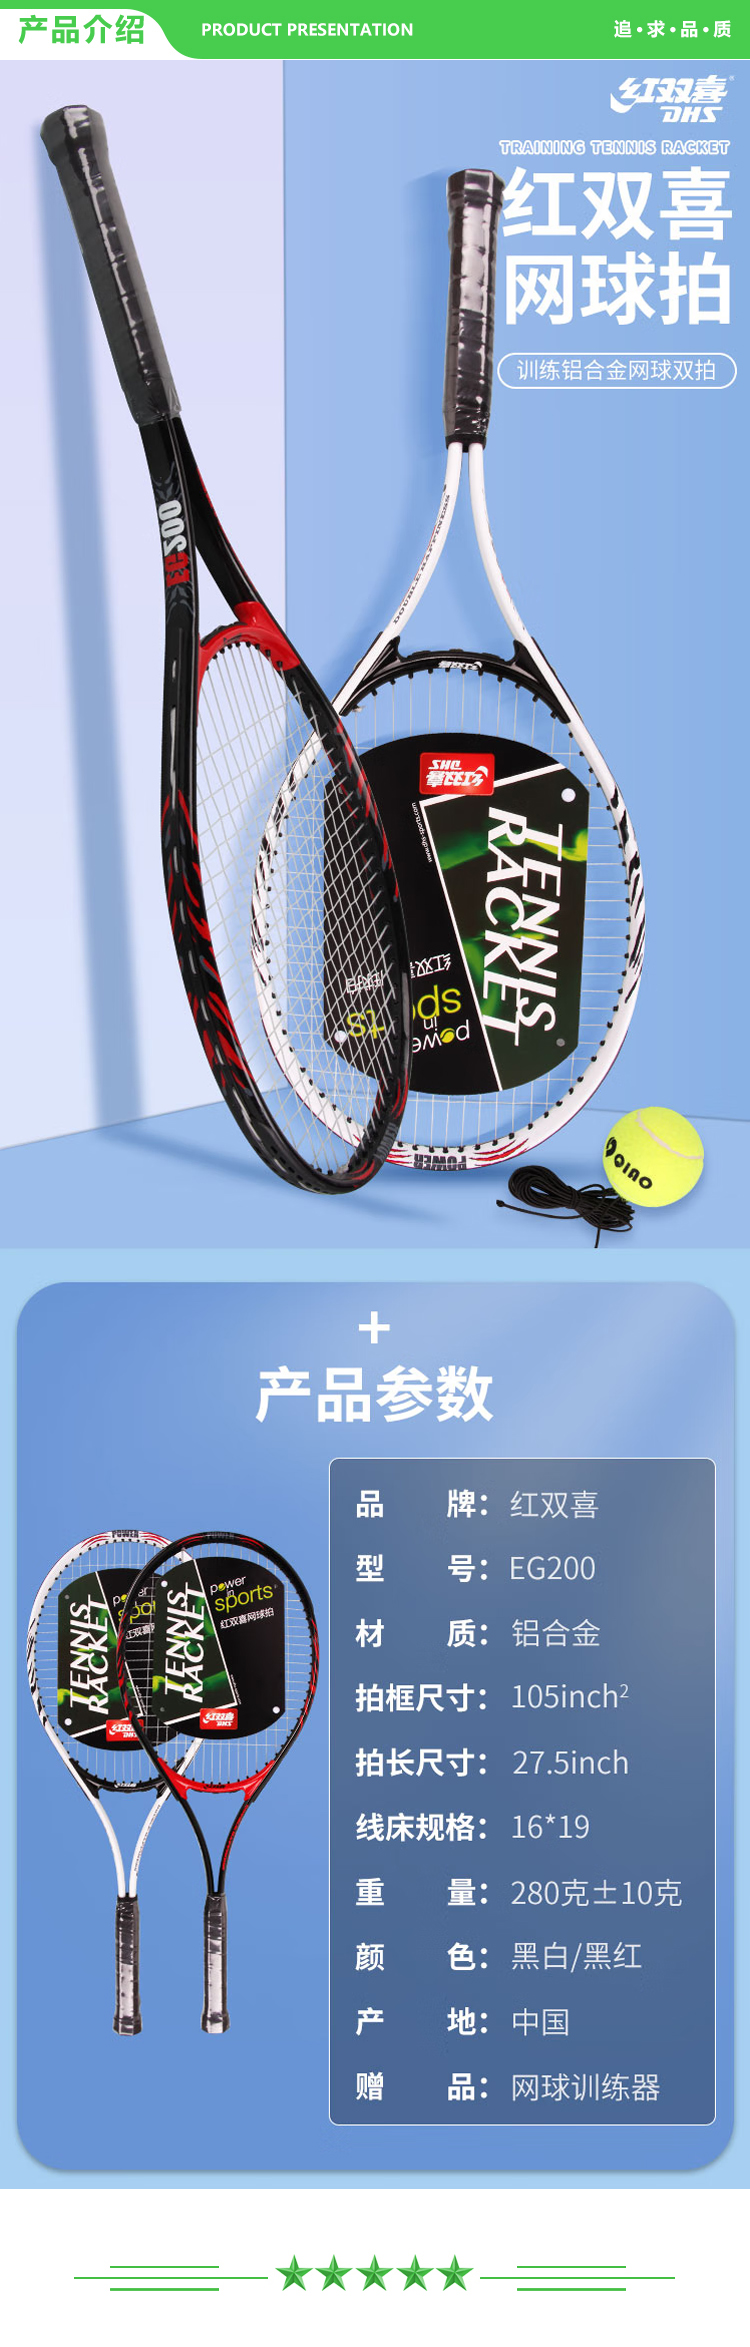 红双喜 DHS EG200 网球拍 黑白-黑红 对拍套装附网球回弹训练器手胶拍包铝合金双拍 .jpg